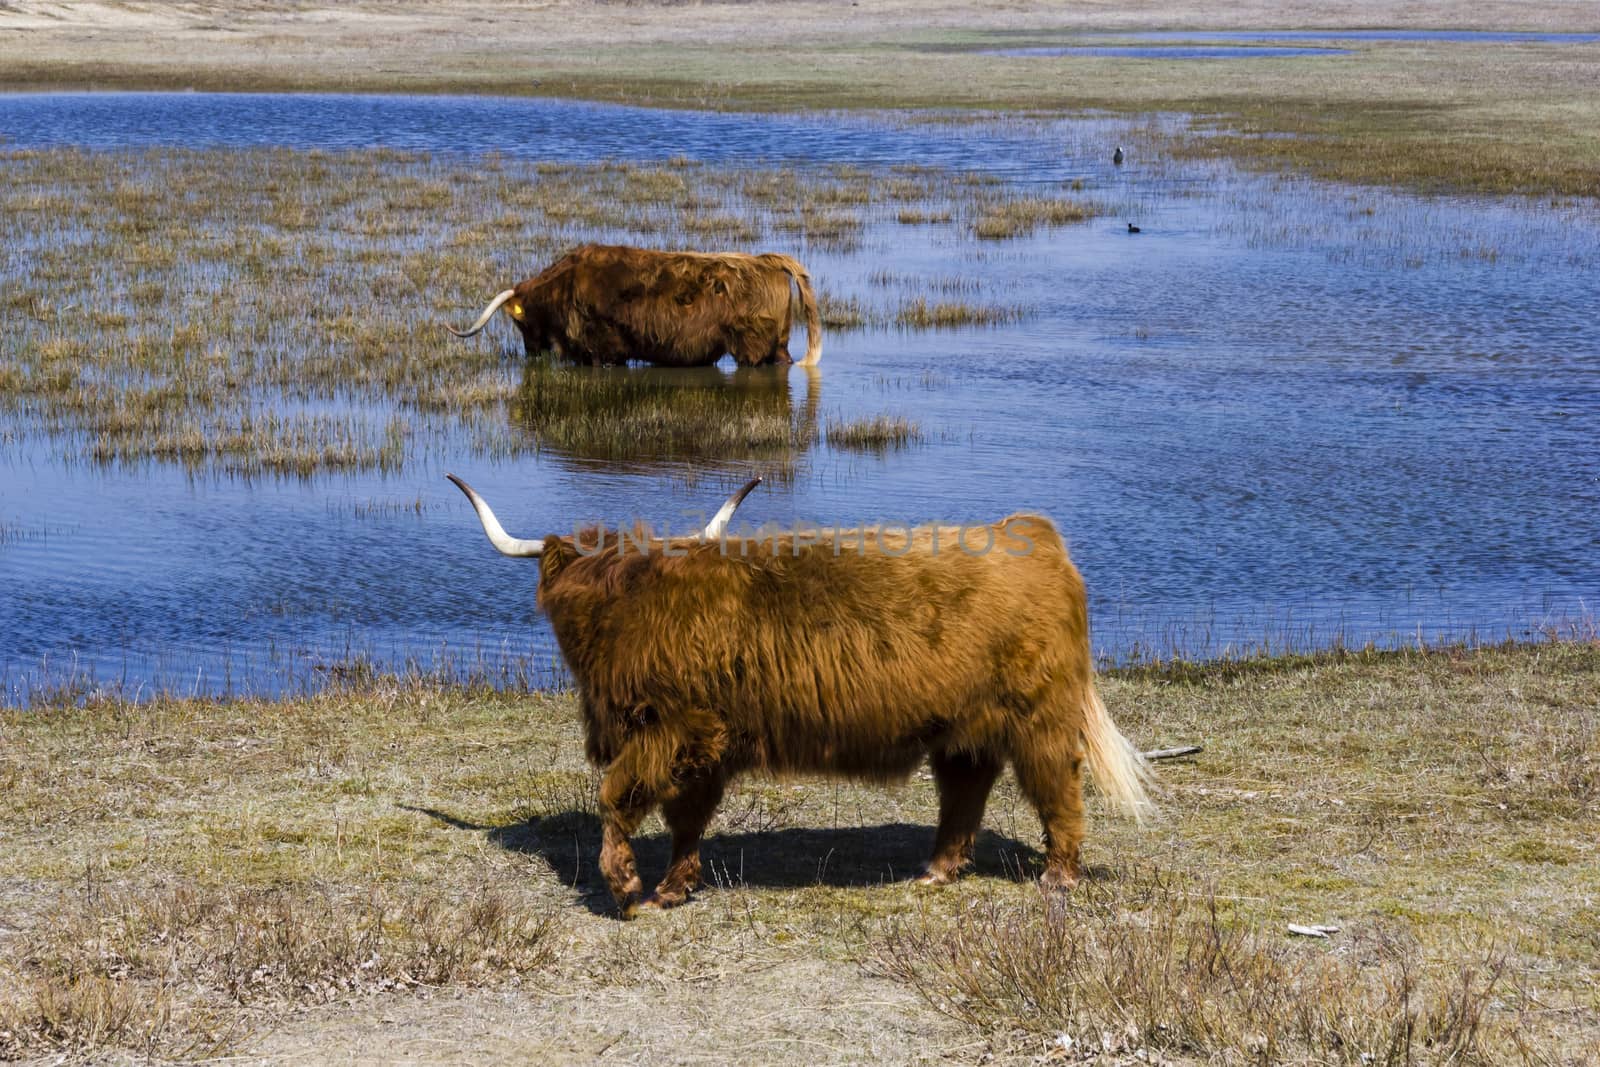 Cattle scottish Highlanders, Zuid Kennemerland, Netherlands by Tetyana